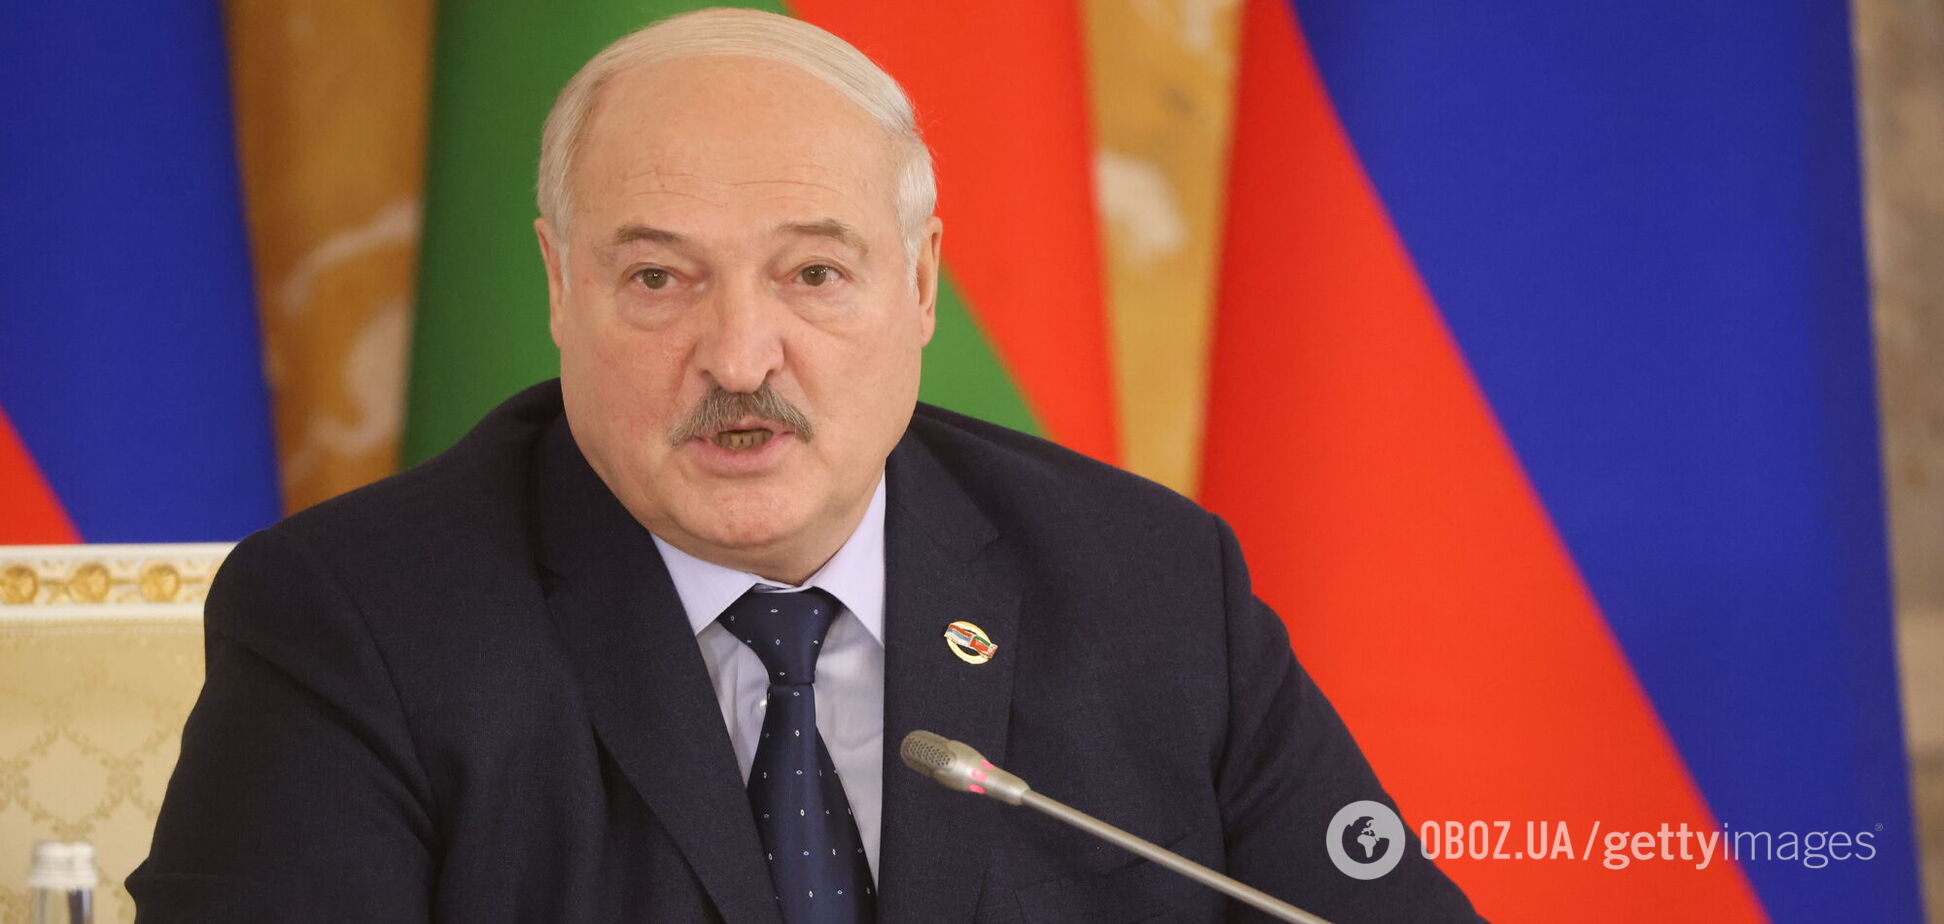 'Говорю відверто': Лукашенко заявив, що Білорусь готується до війни, але заради миру